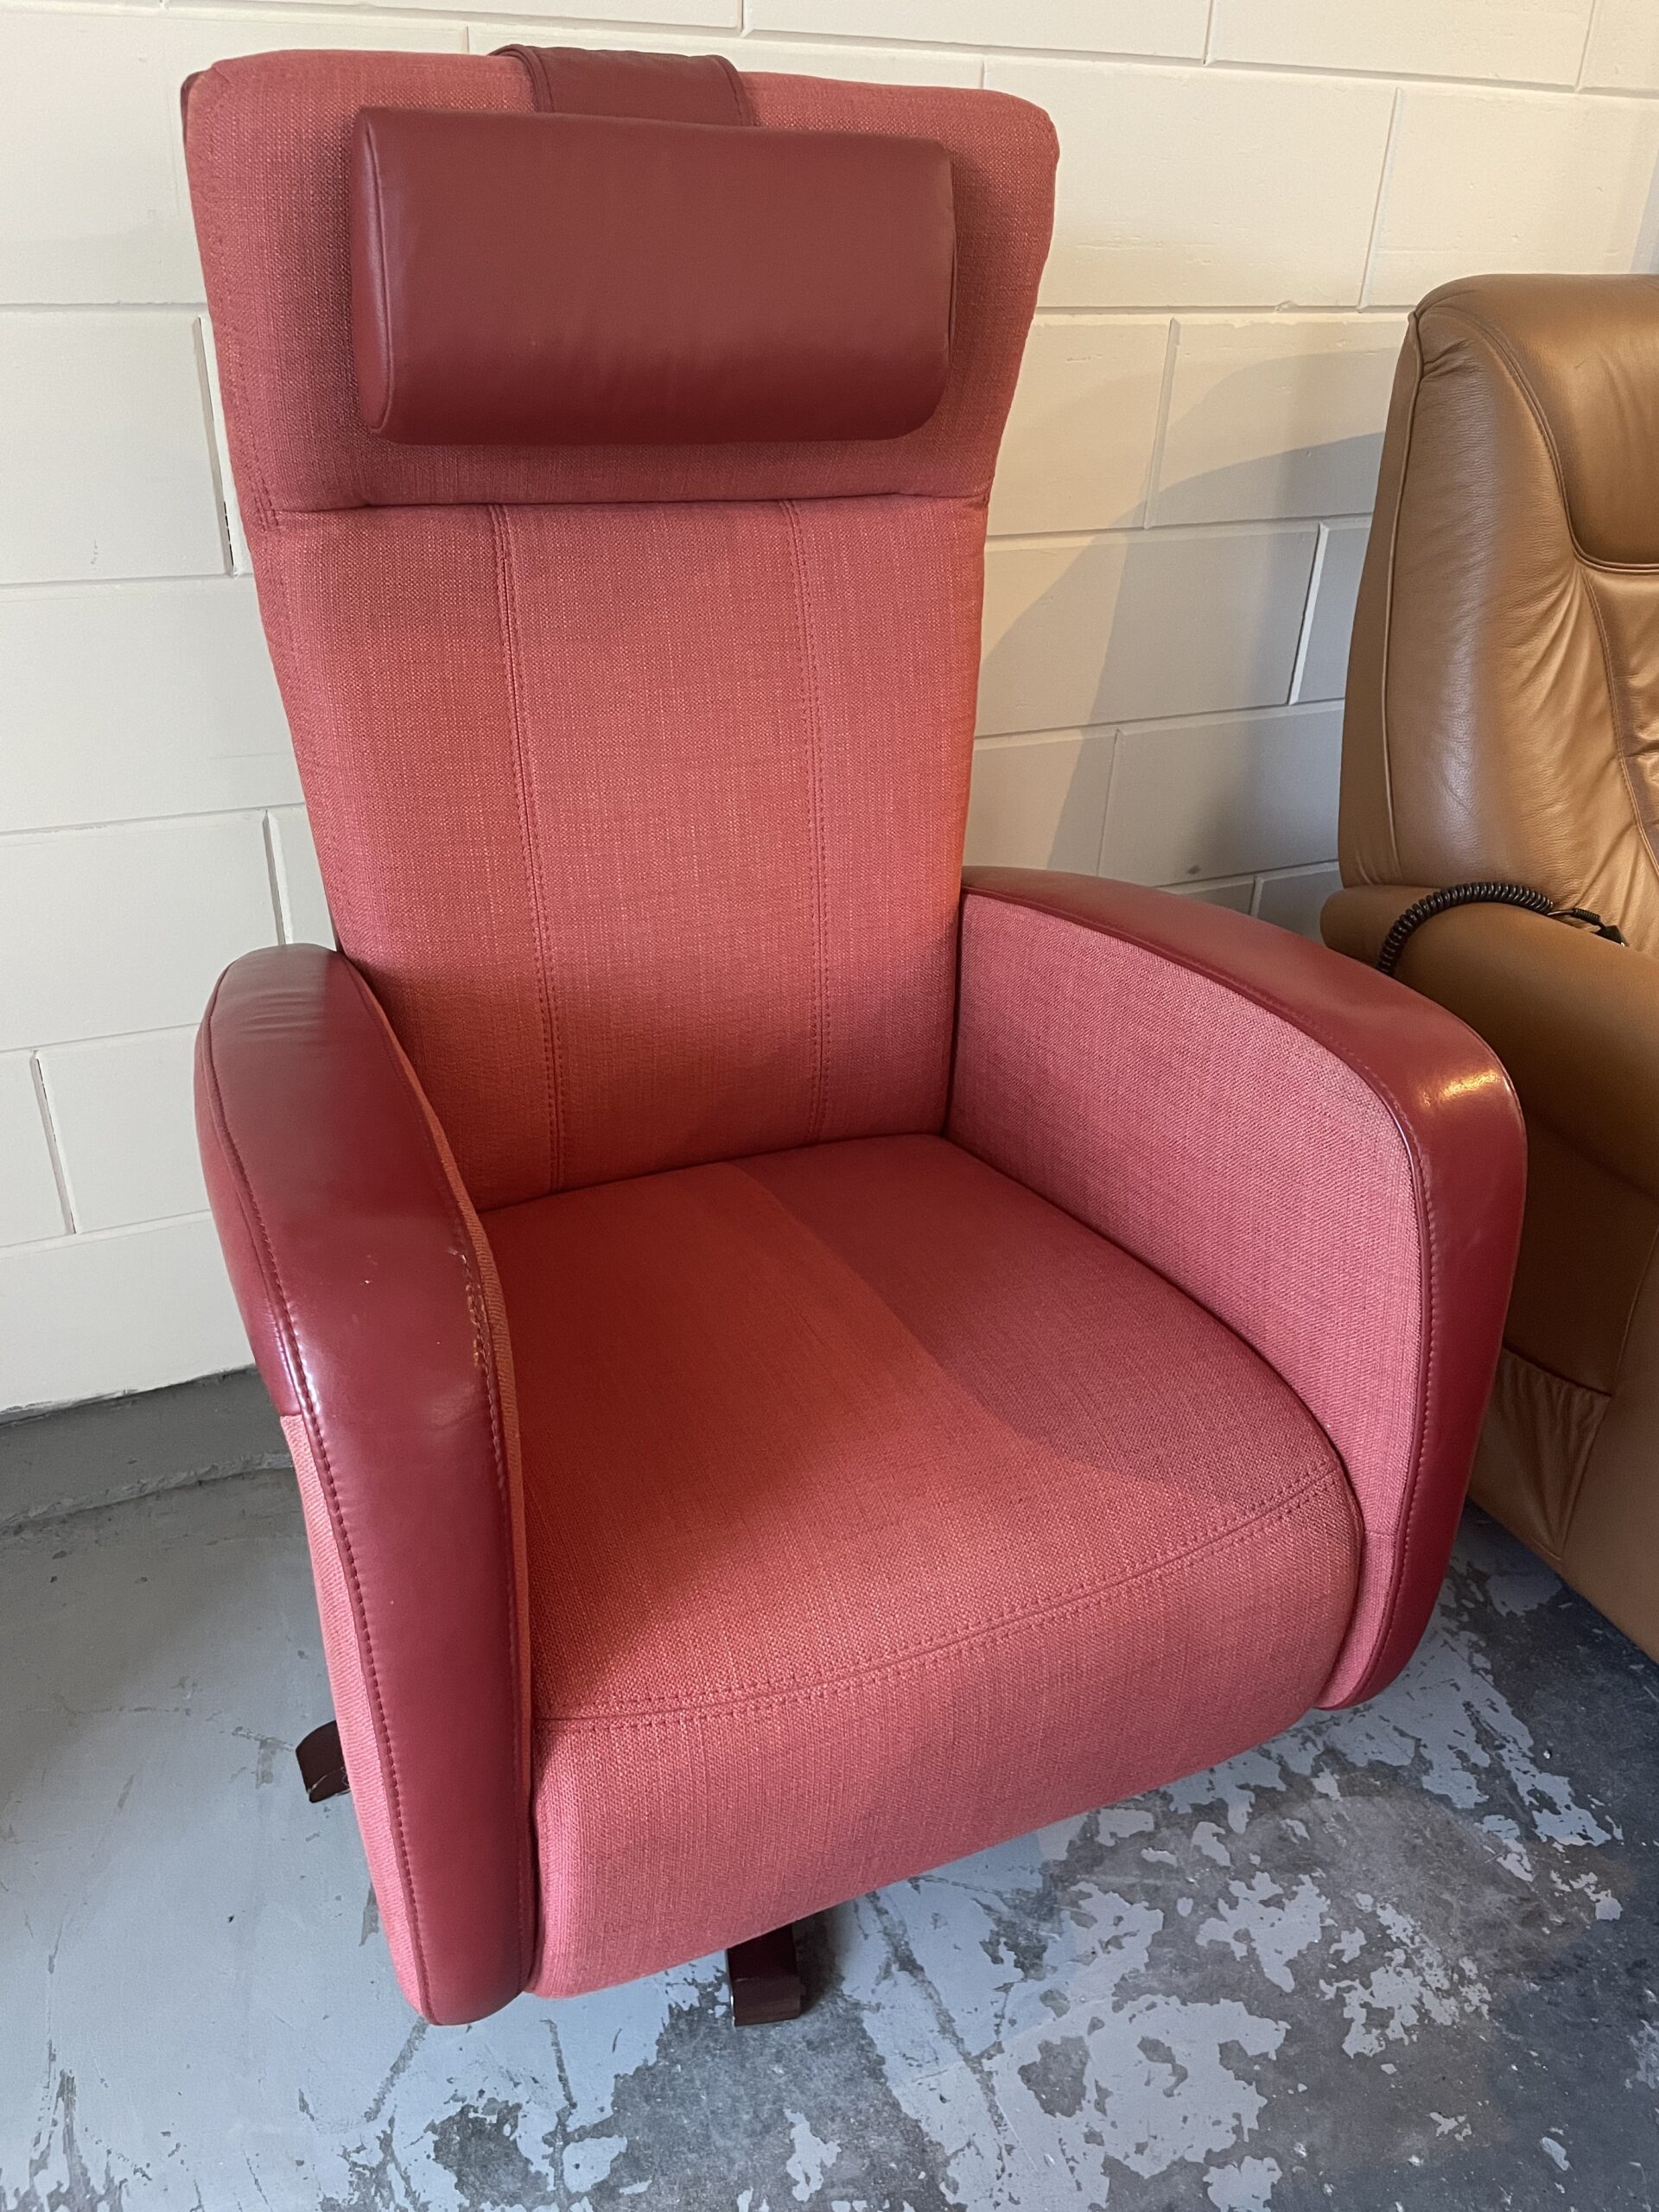 aangrenzend gallon Krachtig Prominent relax stoel rood leer/stof - Sta op stoel Alkmaar